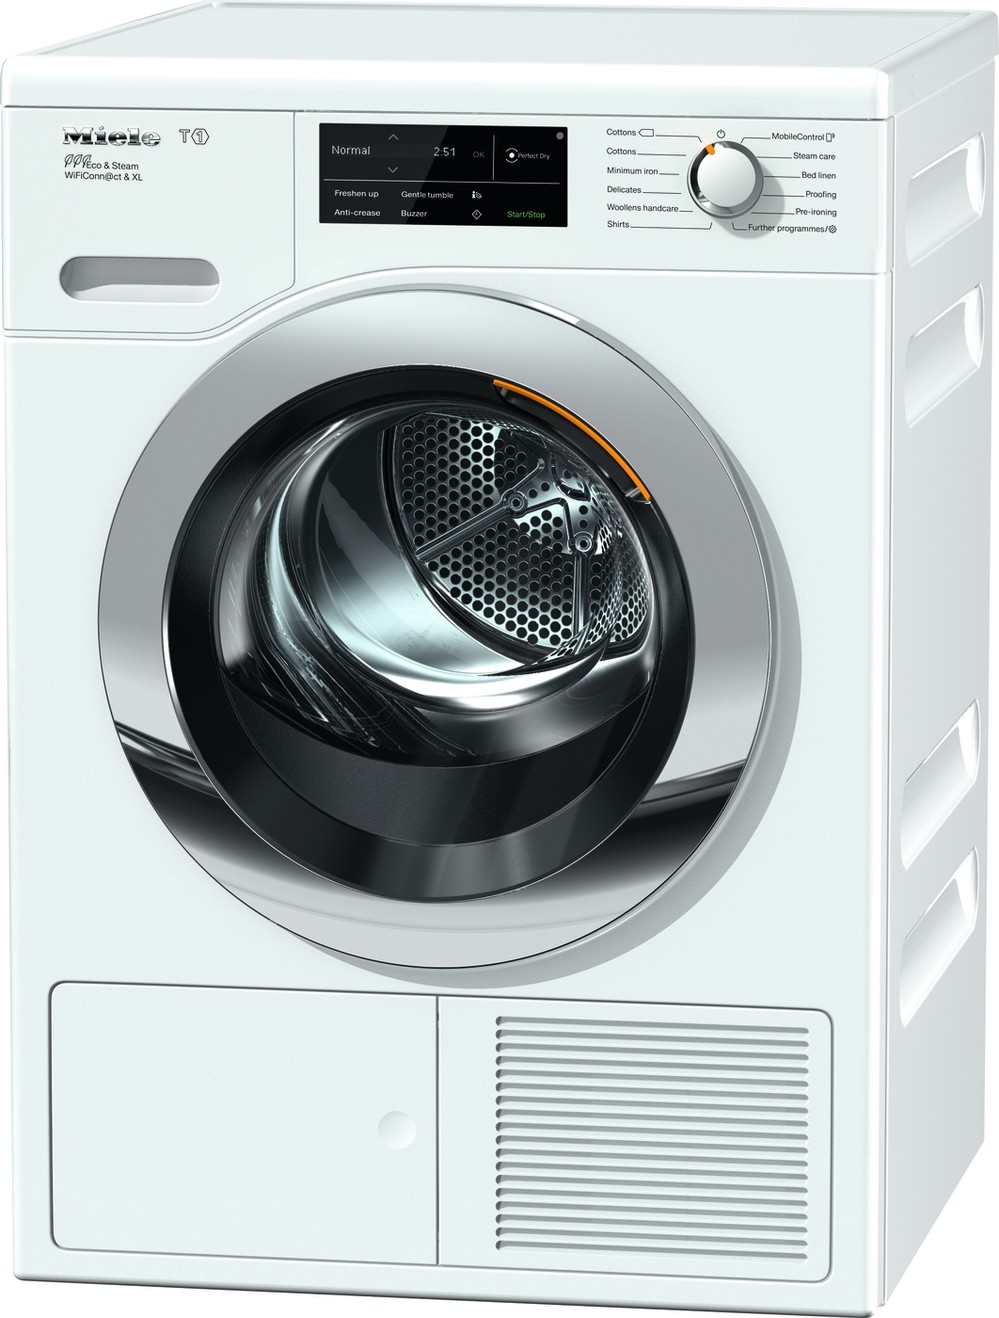 同社製の洗濯機とも親和性の高いデザイン